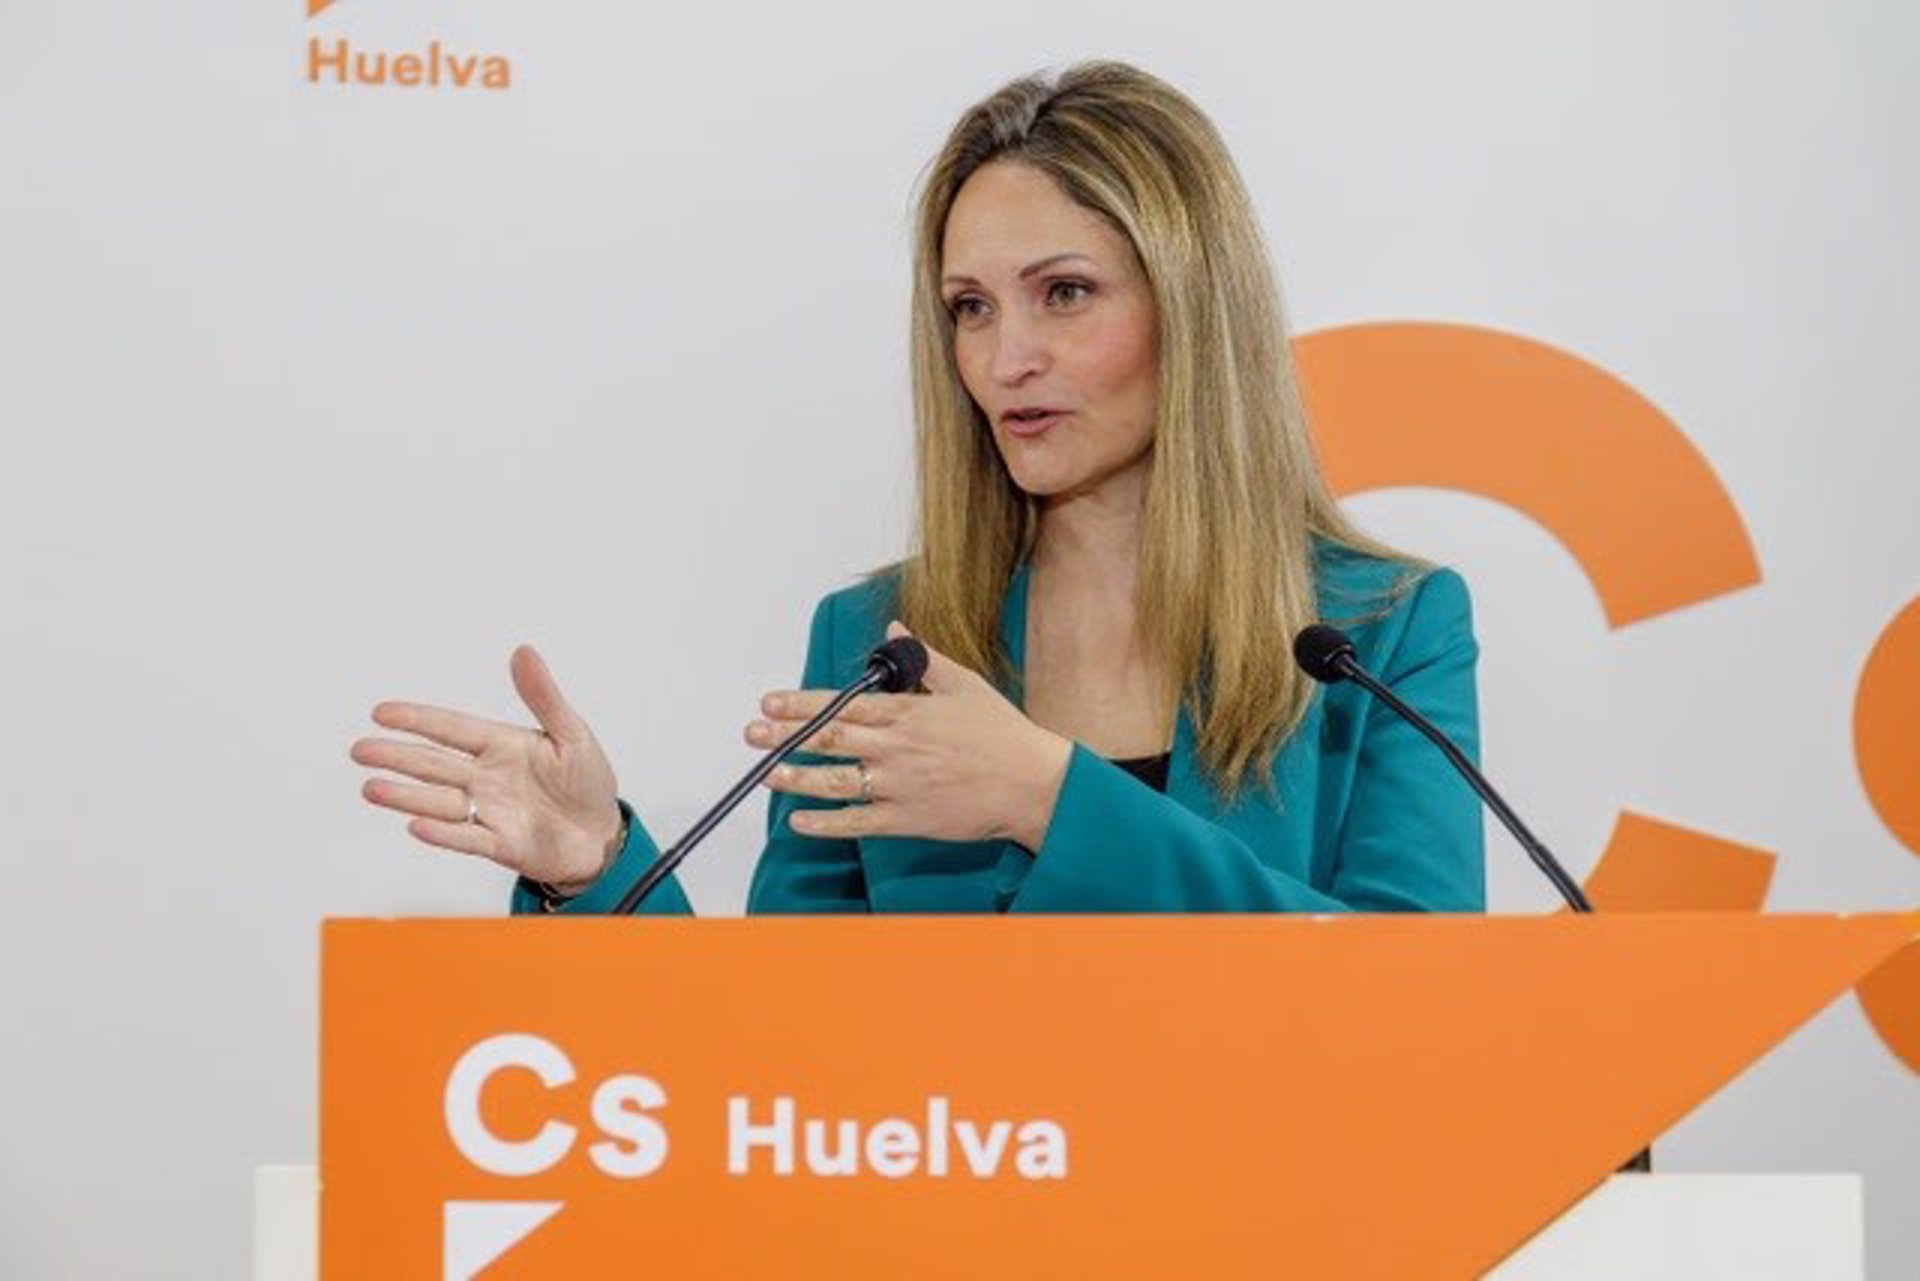 La coordinadora de Cs en Huelva, María Ponce. EP